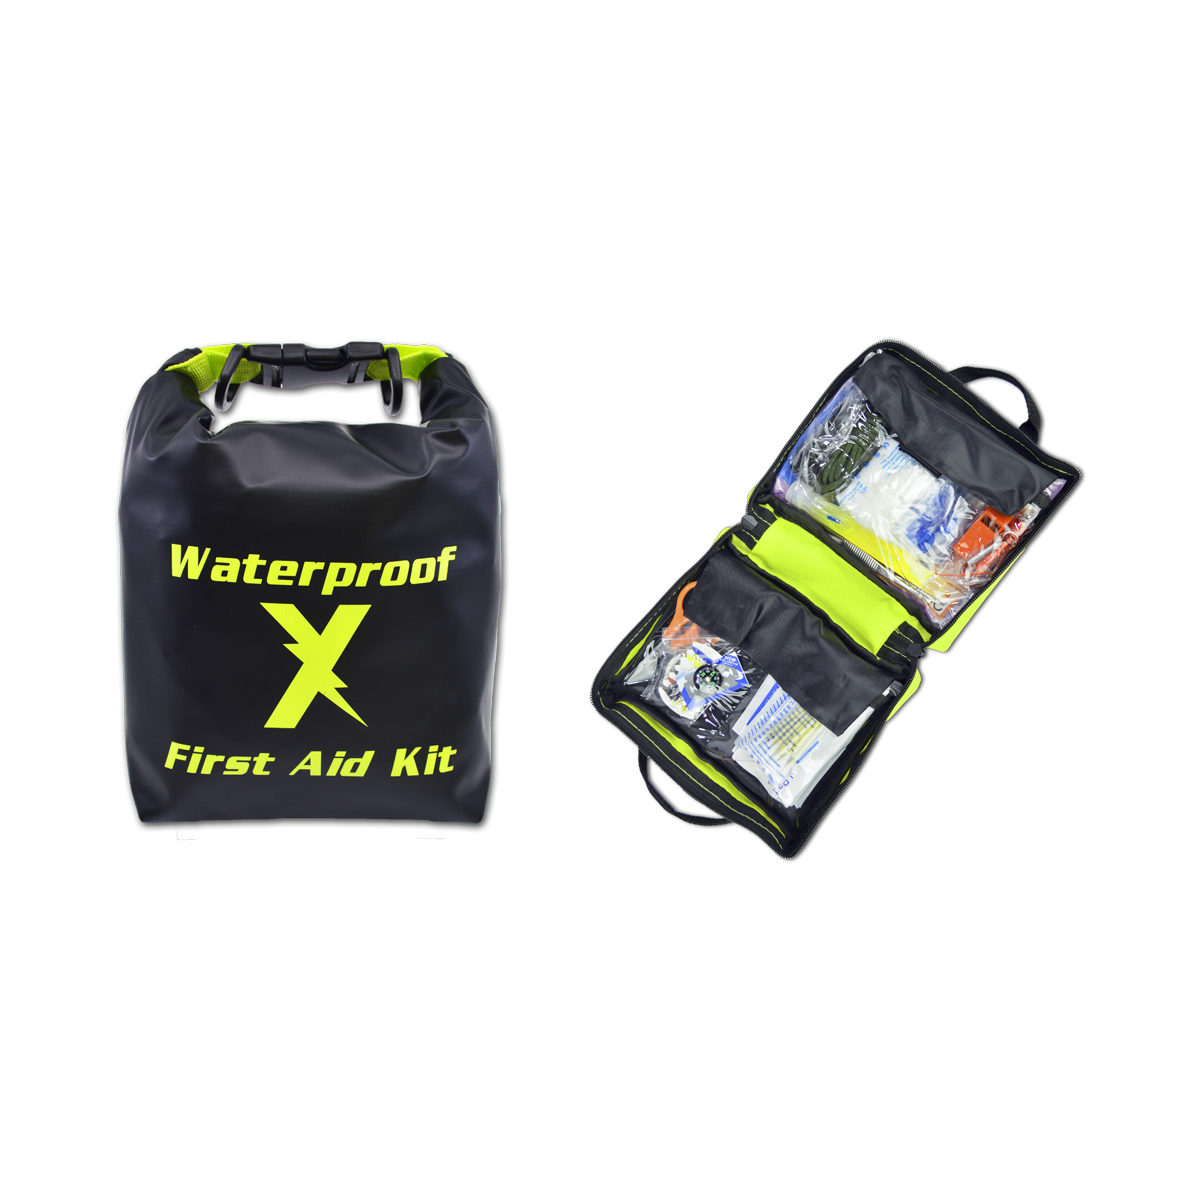 LXFAK1-DRY - Waterproof Hi-Vis First Aid Kit